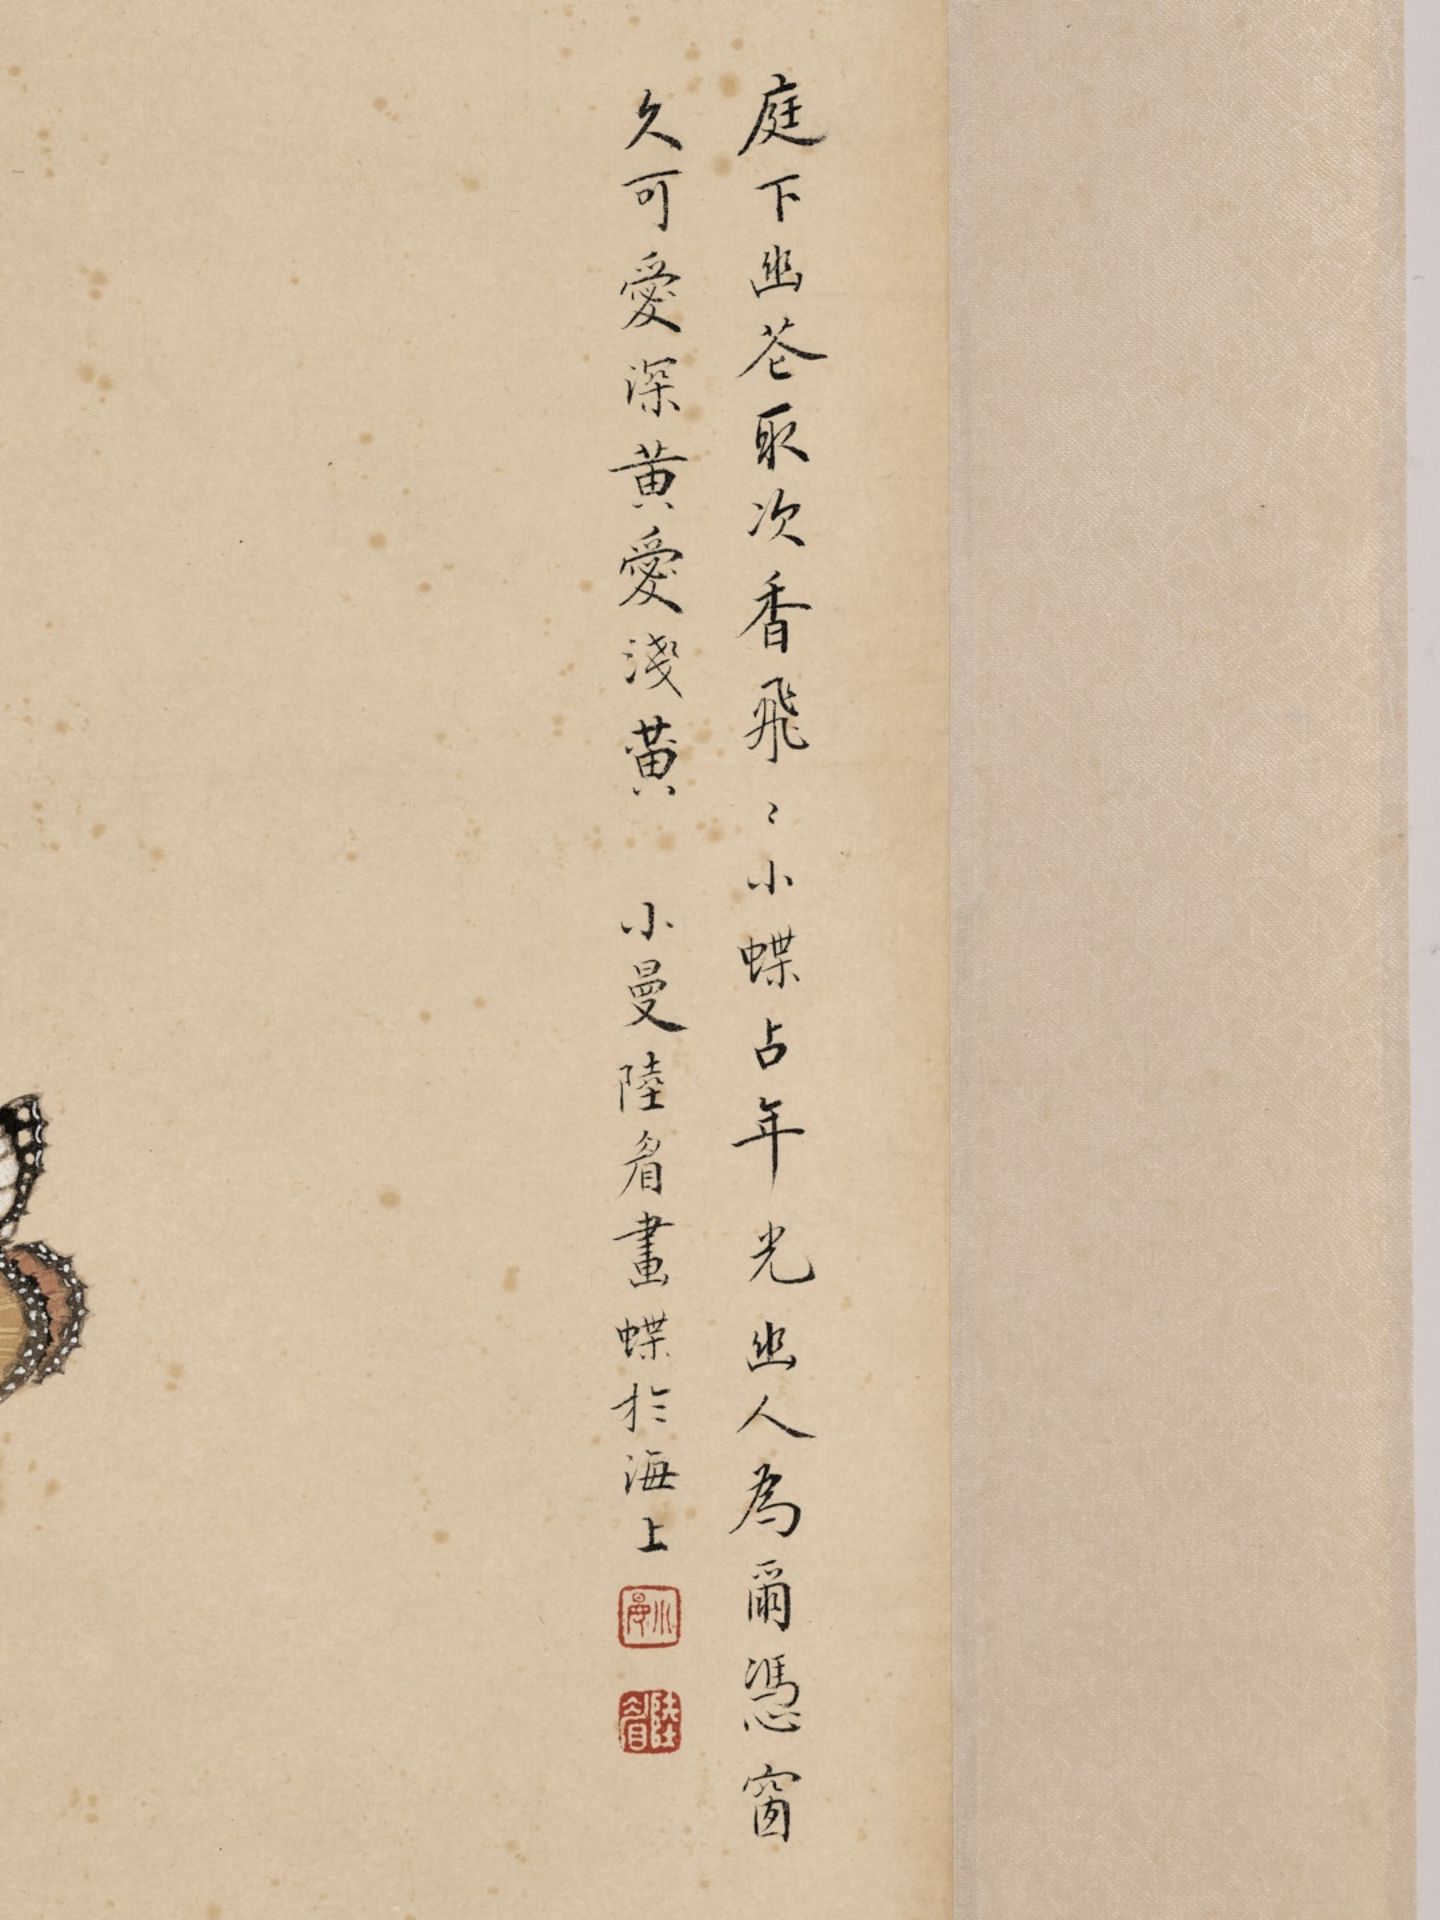 BUTTERFLIES, FLOWERS, SCEPTER, AND VASE', BY LU XIAOMAN, CHEN XIAOCUI, XIE YUEMEI, AND PAN JINGSHU - Bild 14 aus 24